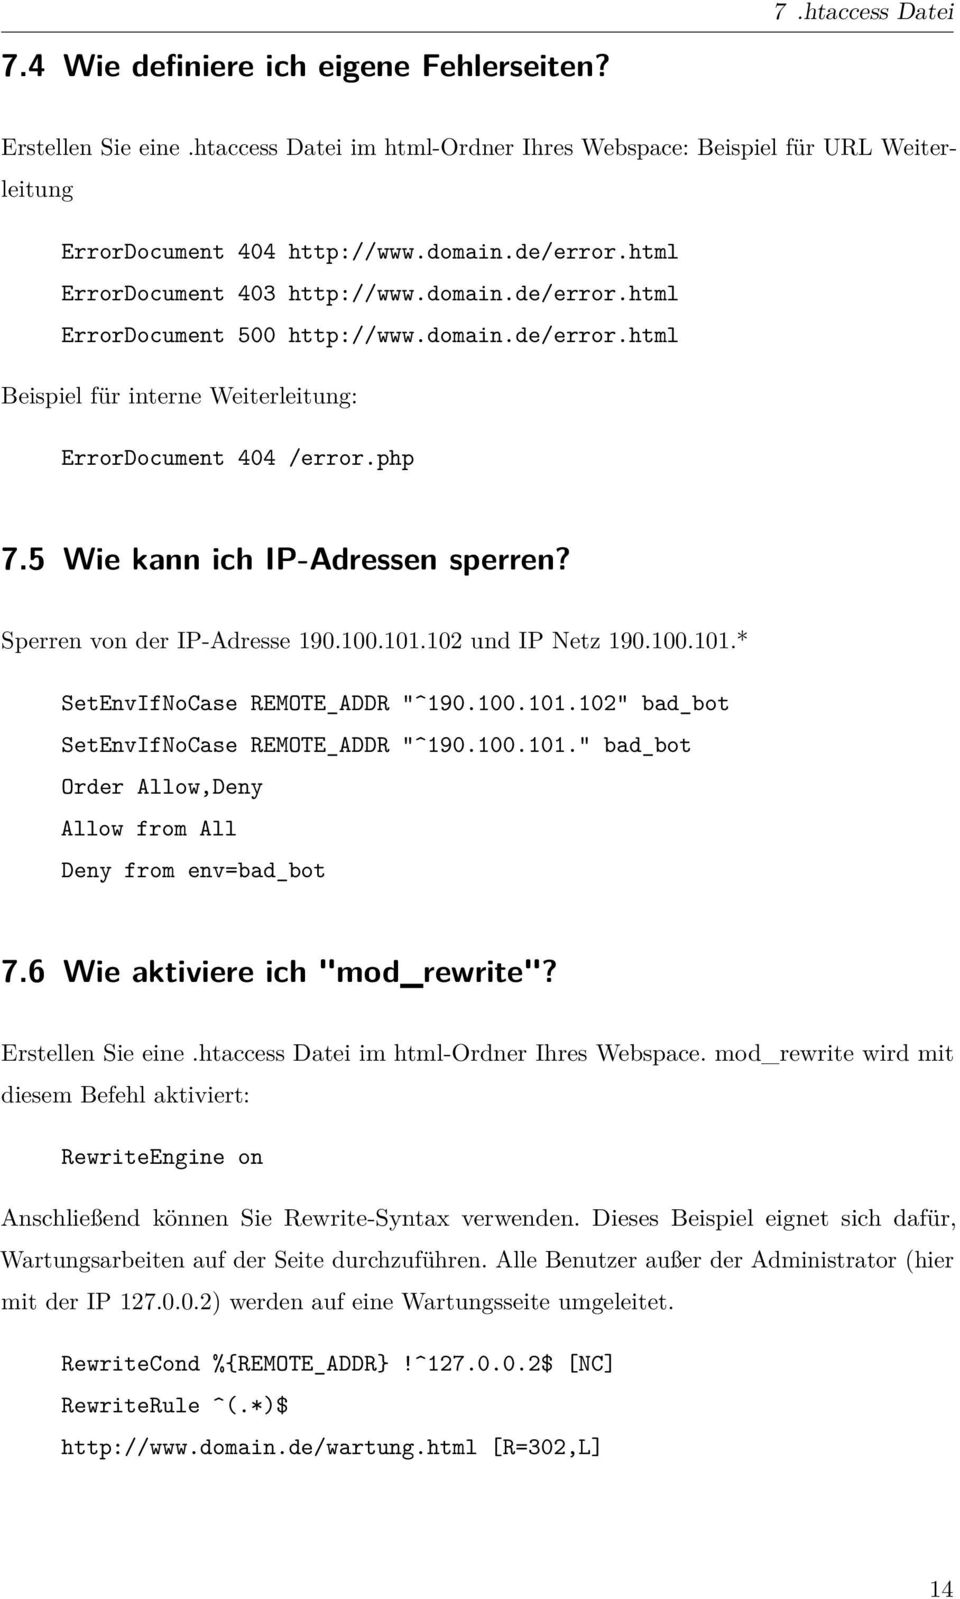 5 Wie kann ich IP-Adressen sperren? Sperren von der IP-Adresse 190.100.101.102 und IP Netz 190.100.101.* SetEnvIfNoCase REMOTE_ADDR "^190.100.101.102" bad_bot SetEnvIfNoCase REMOTE_ADDR "^190.100.101." bad_bot Order Allow,Deny Allow from All Deny from env=bad_bot 7.